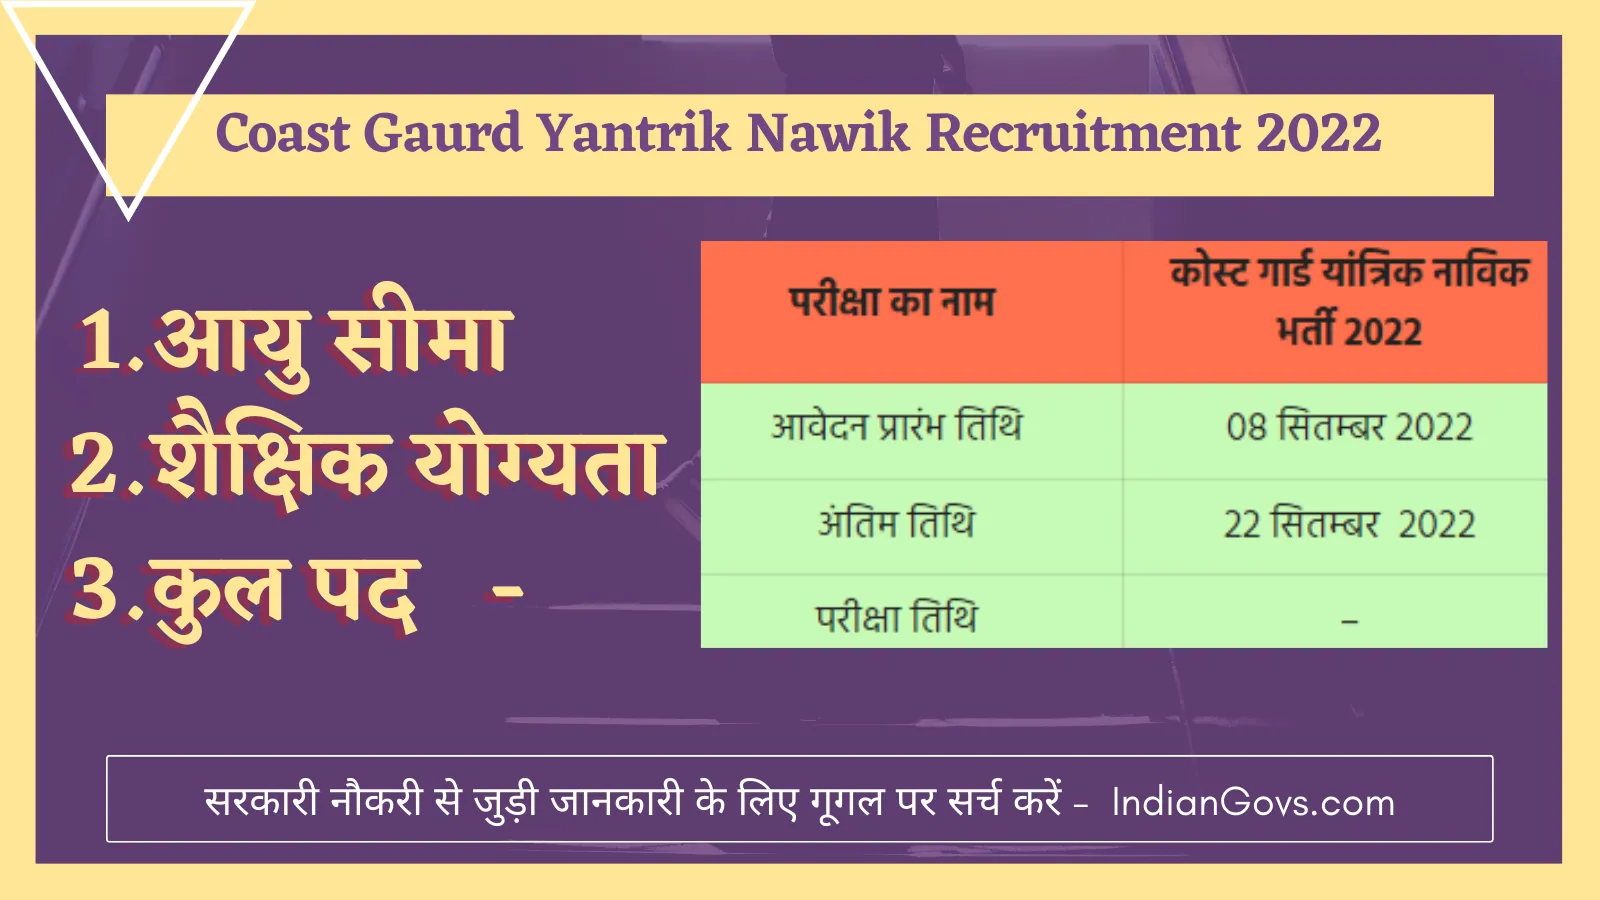 Coast Gaurd Yantrik Nawik Recruitment 2022